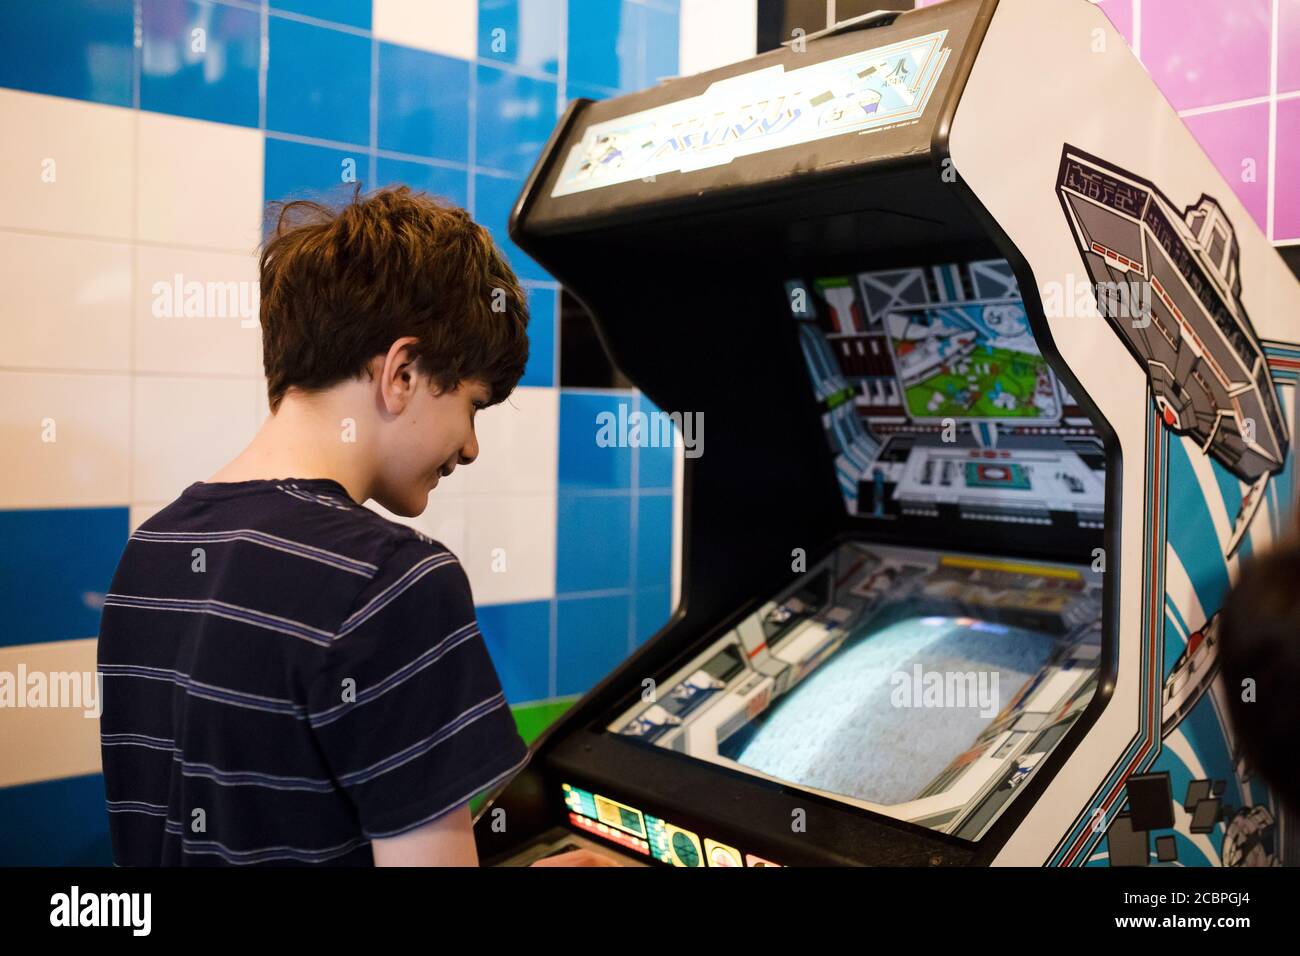 Un ragazzo di quindici anni gioca il gioco arcade Atari Xevious al Computerspiele Museum (museo dei videogiochi) di Berlino, Germania. Foto Stock